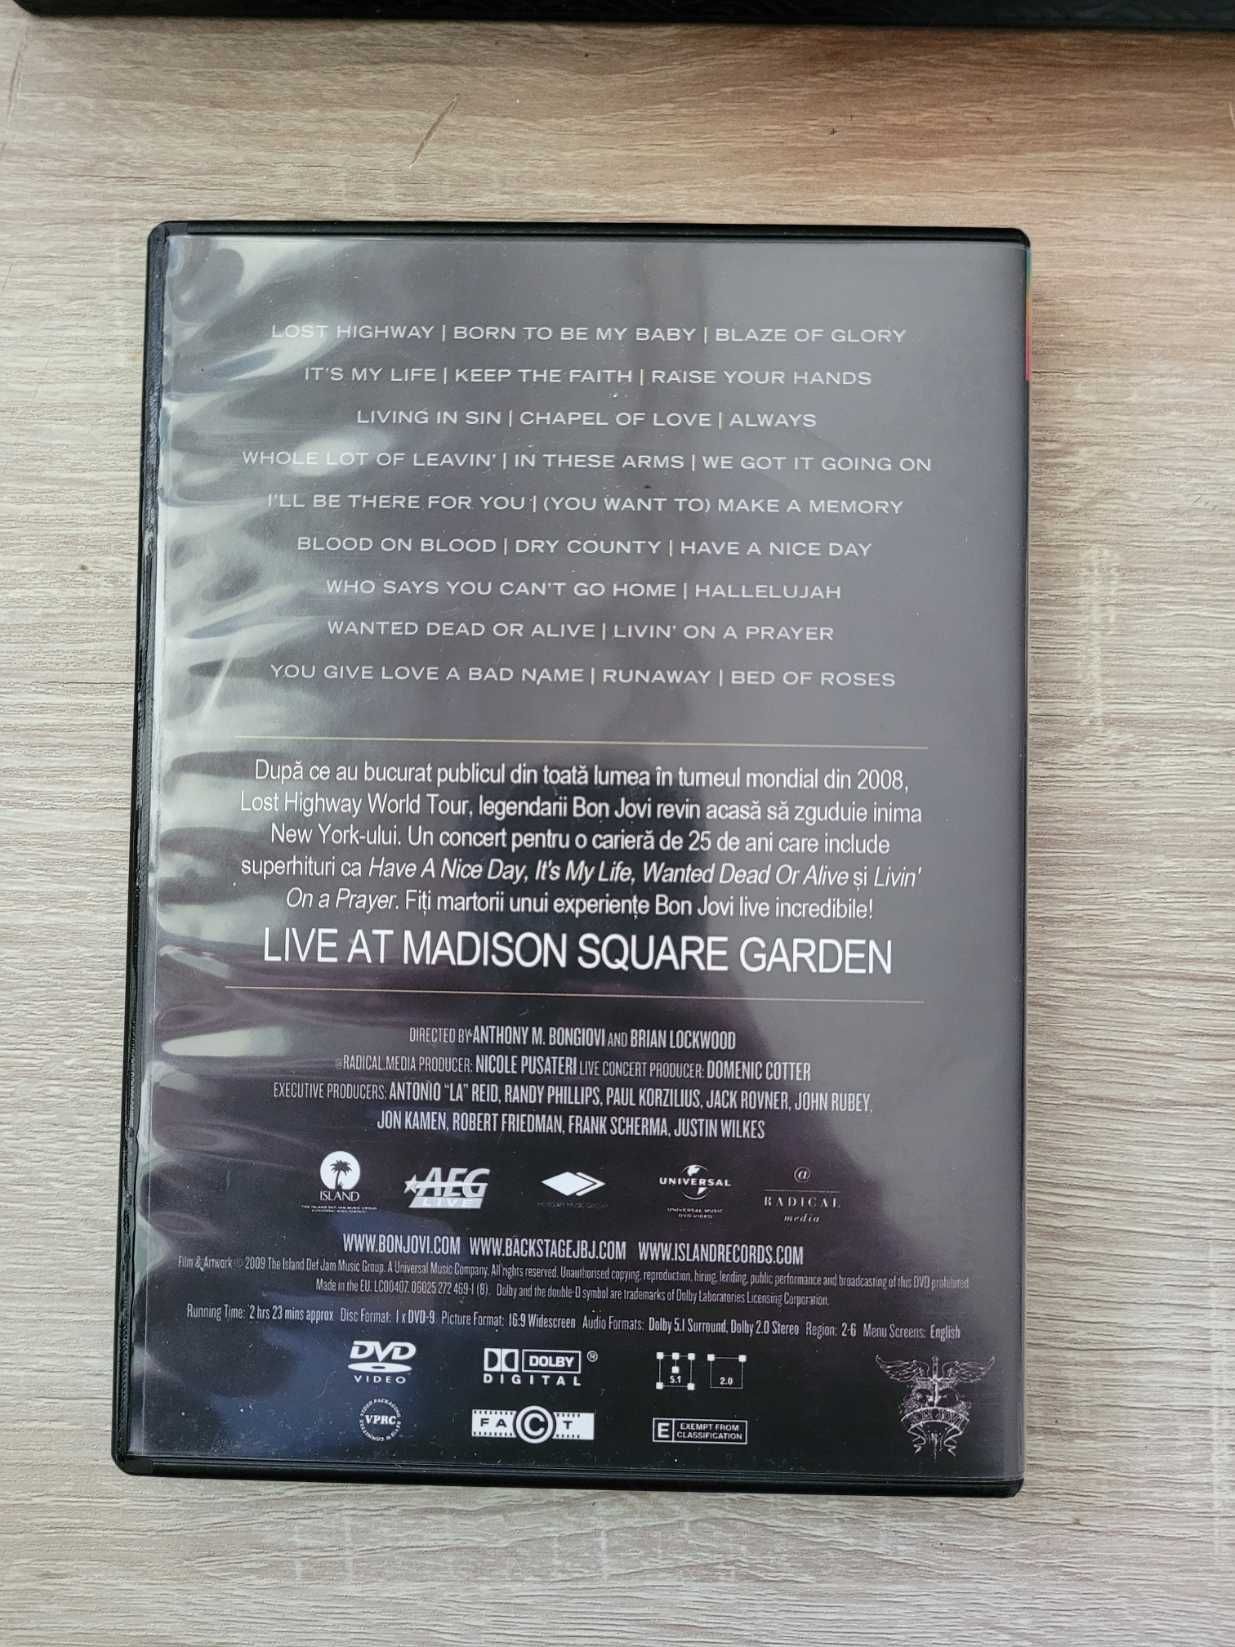 Bon Jovi - Live at madison square garden